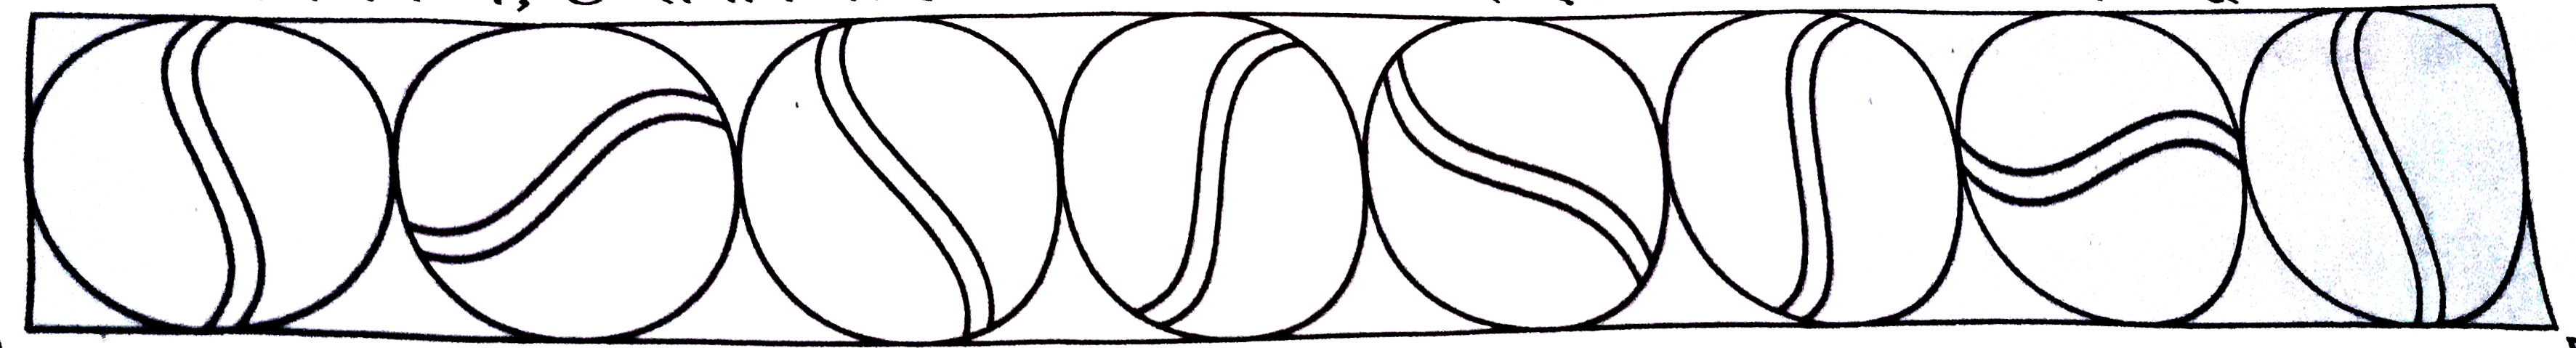 निम्नलिखित चित्र में, 8 समान लोहे की गेंदों का परिच्छेद एक क्षैतिज सतह पर एक-दूसरे को स्पर्श करता है।      यदि गेंद  का आयतन (9pi)/(2) घन सेमी है, तो संदूक की निम्नतम लम्बाई और गहराई क्या होनी चाहिए कि सभी गेंद इसमें रखी जा सकें ?